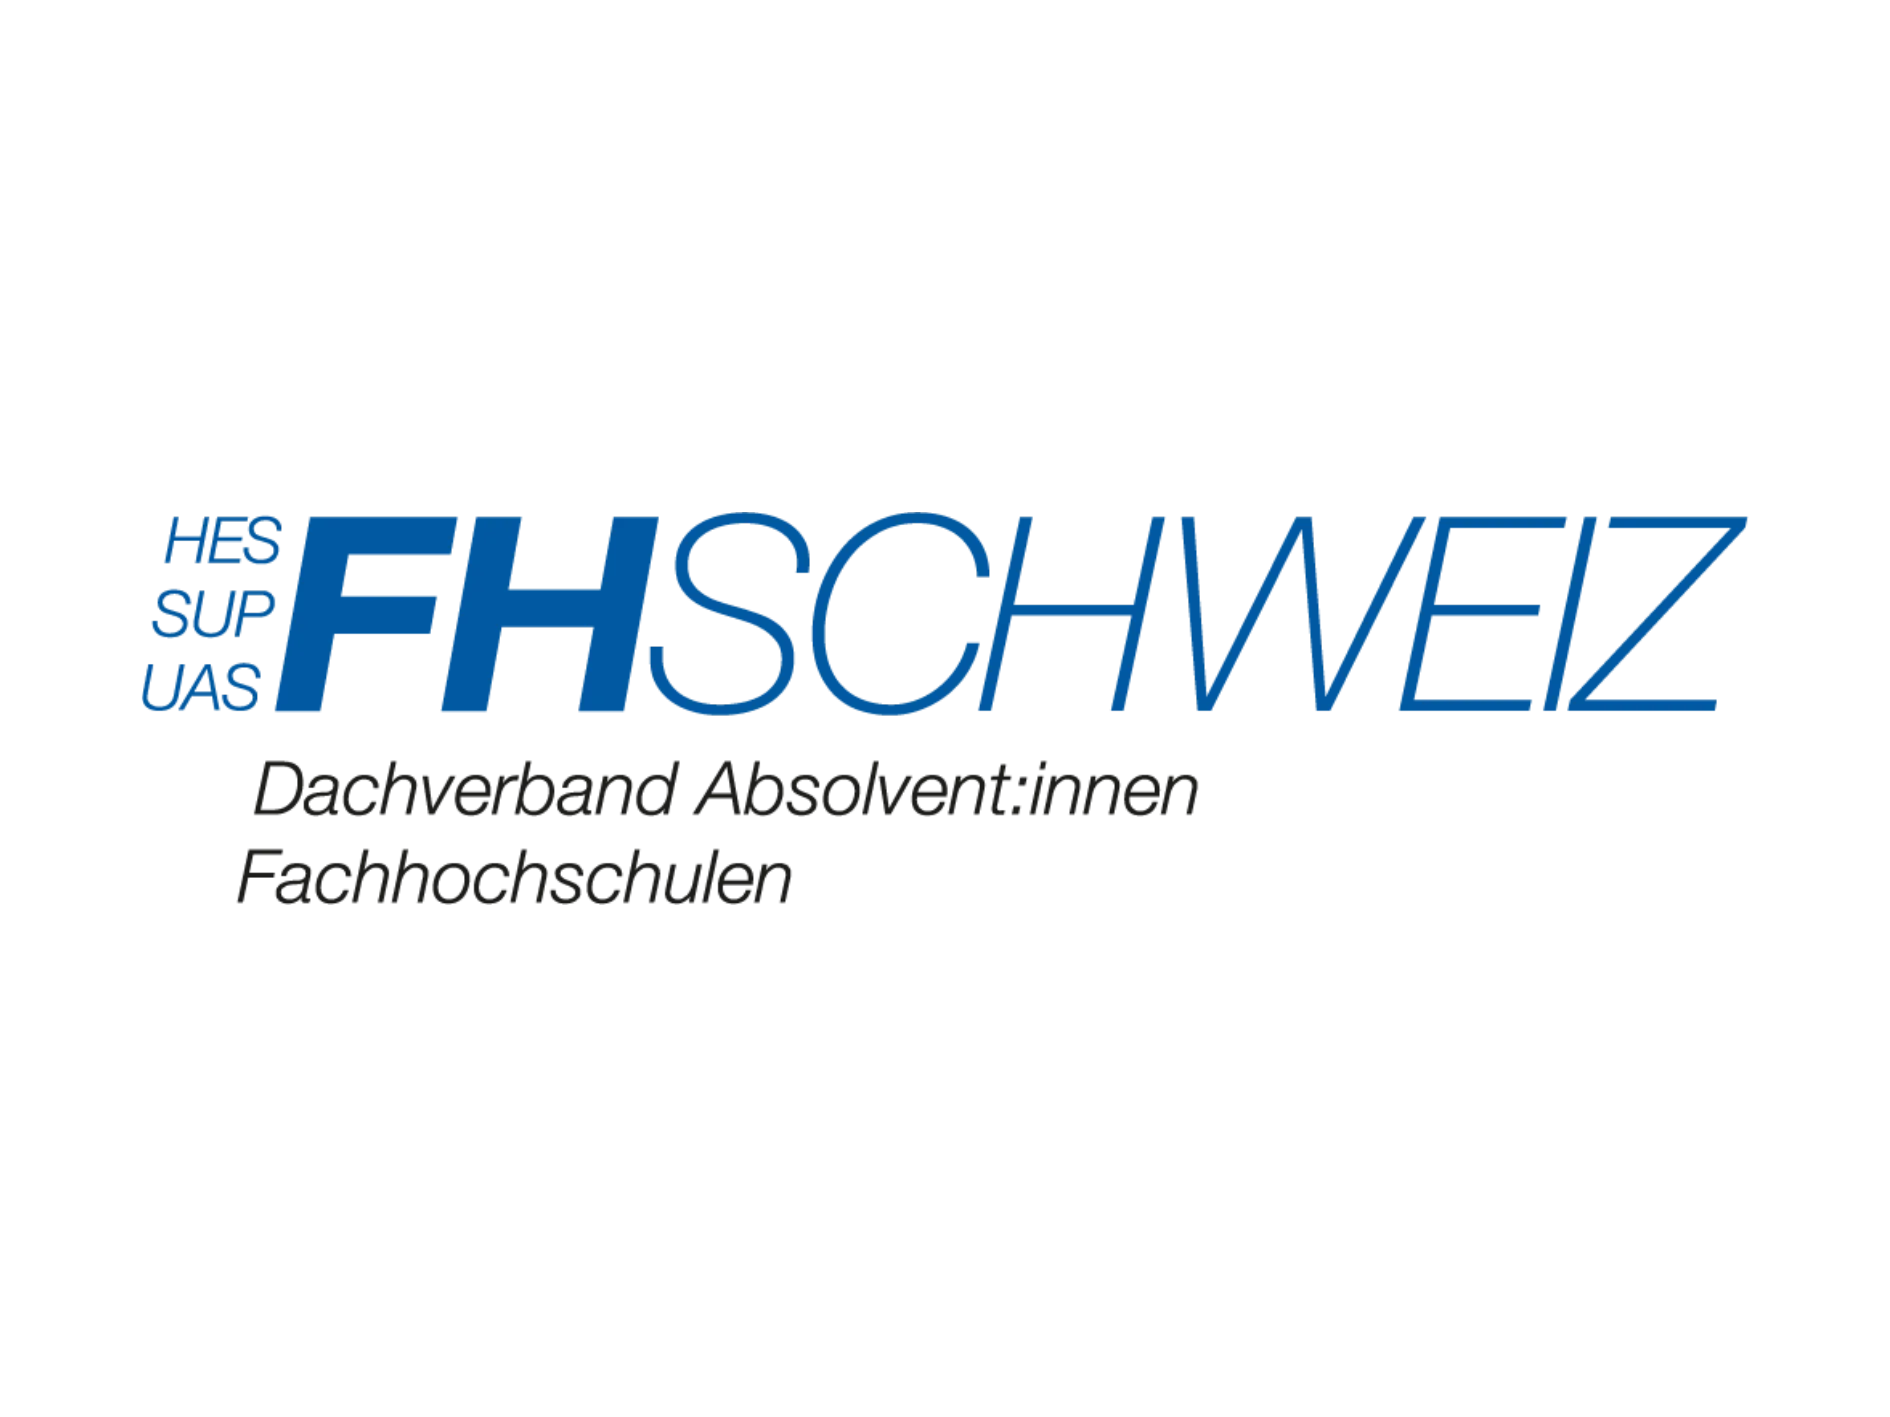 Wirtschaftsschule Five Partner FH Schweiz